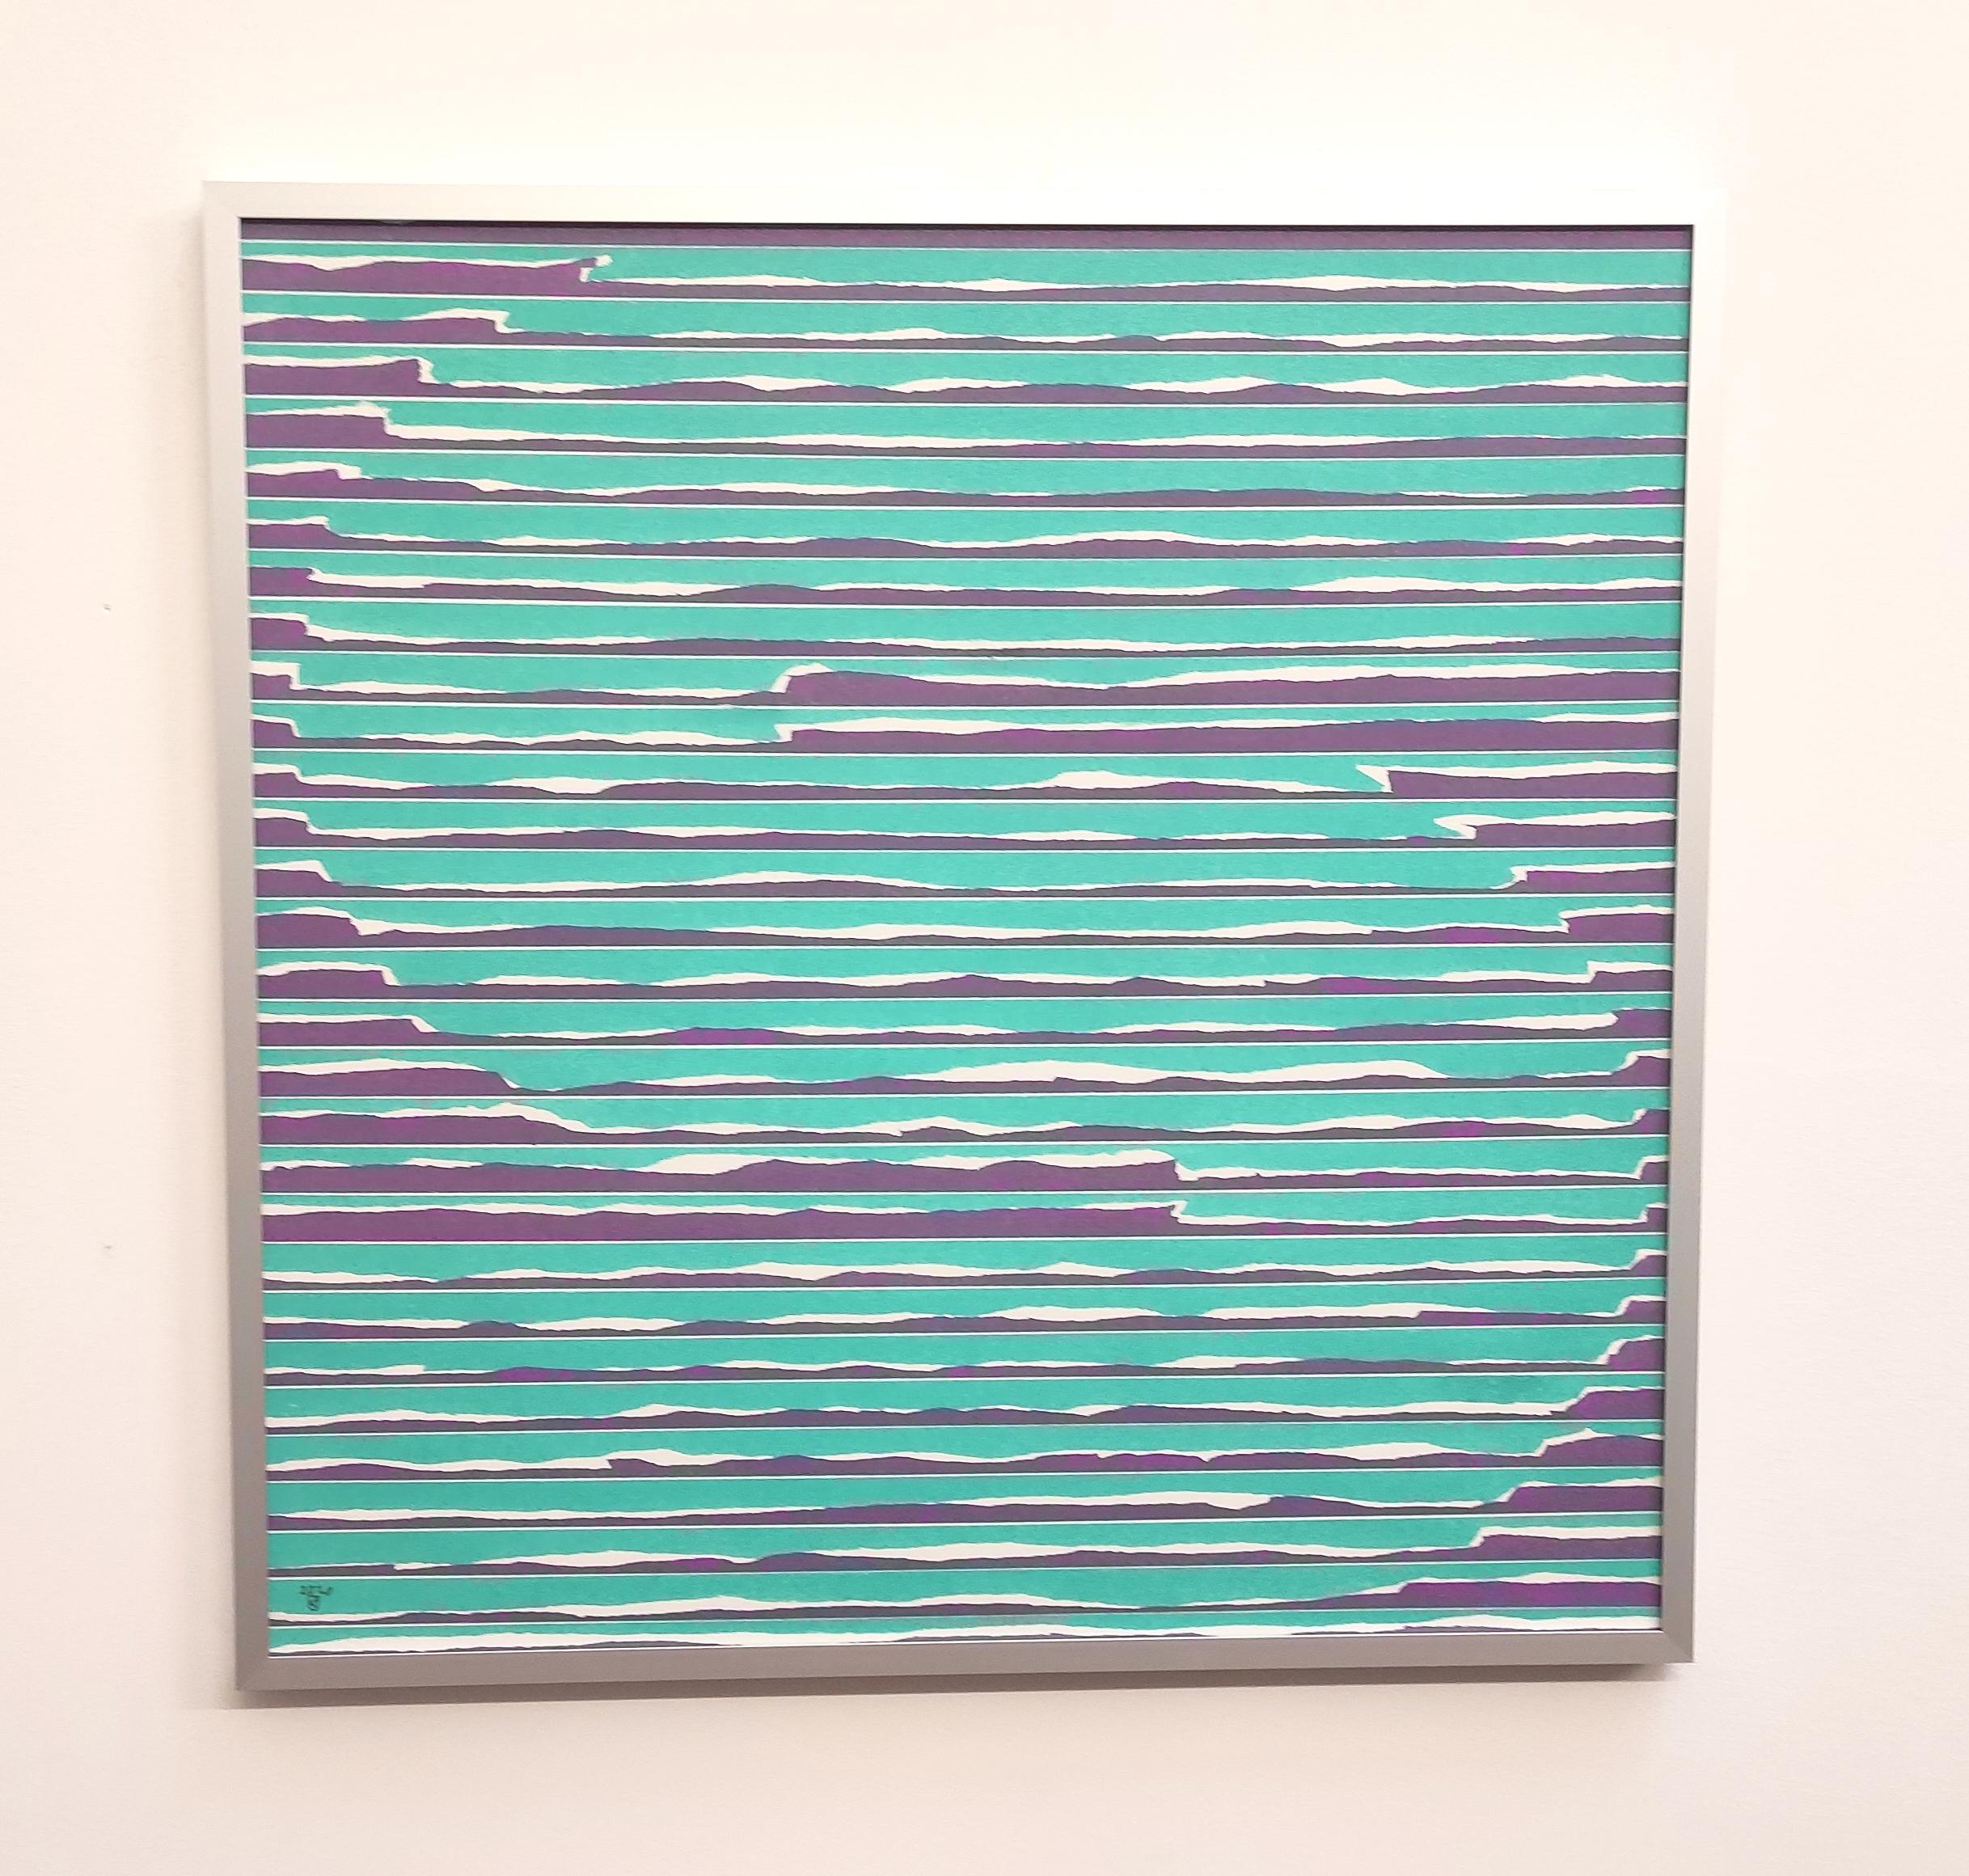  S  from The Message Series - Peinture abstraite contemporaine à l'huile au pastel, encadrée - Art de Janusz Kokot